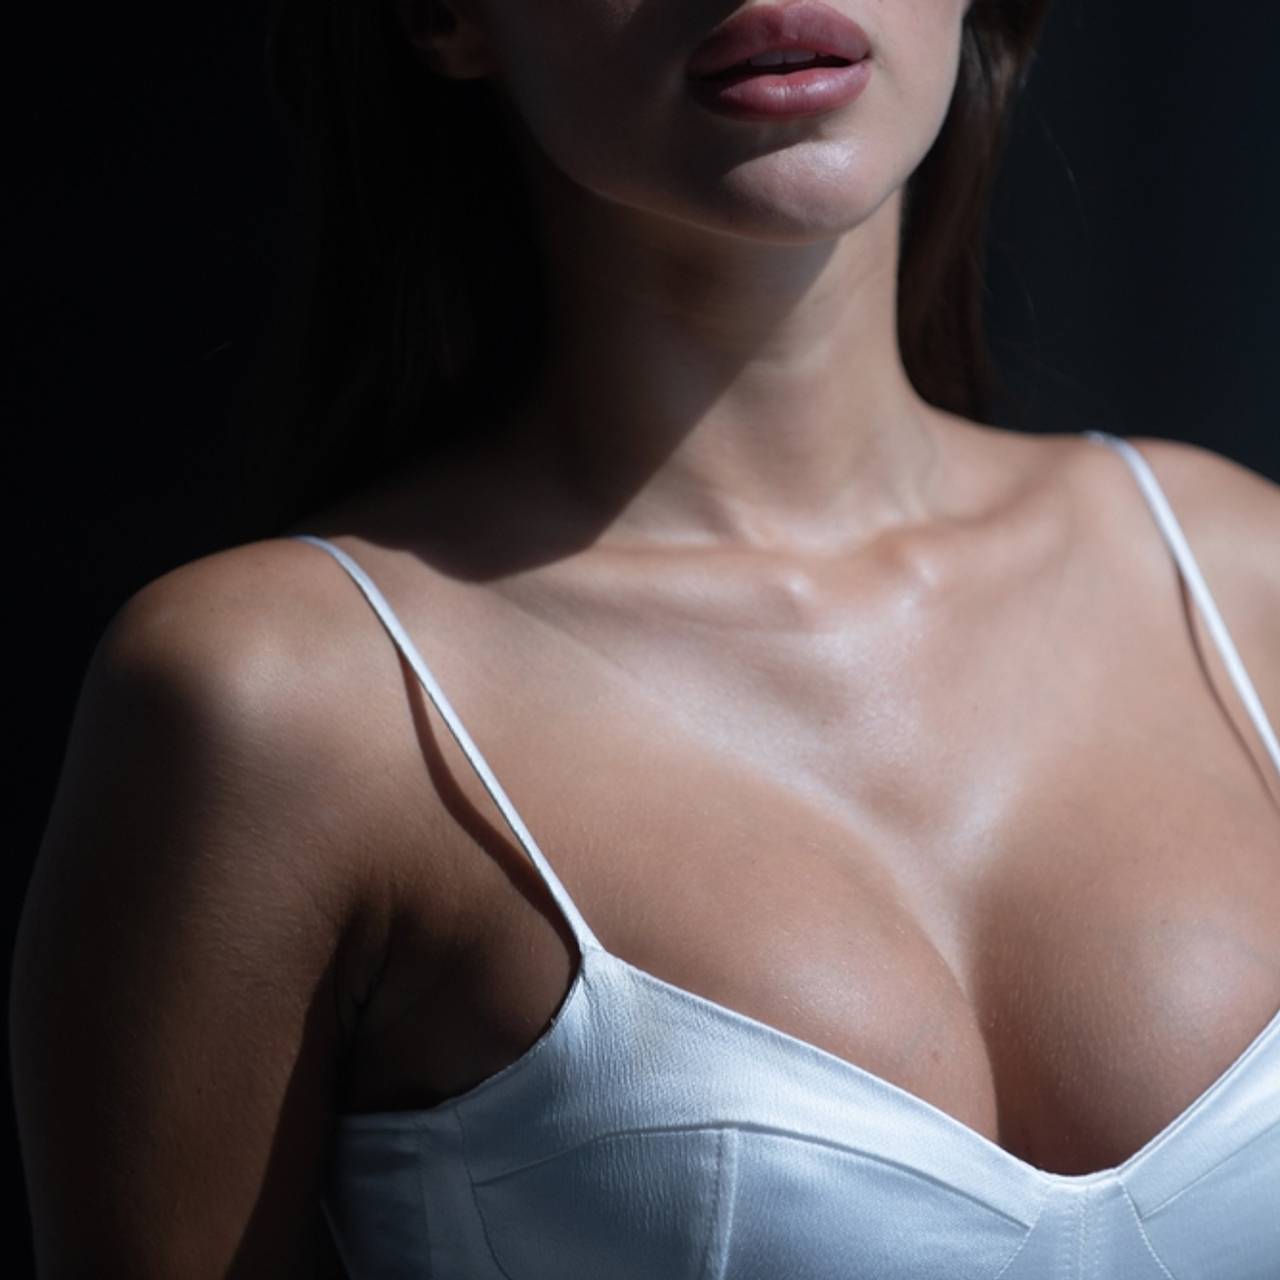 Участниц конкурса красоты заставили раздеться догола перед мужчинами:  Происшествия: Из жизни: Lenta.ru